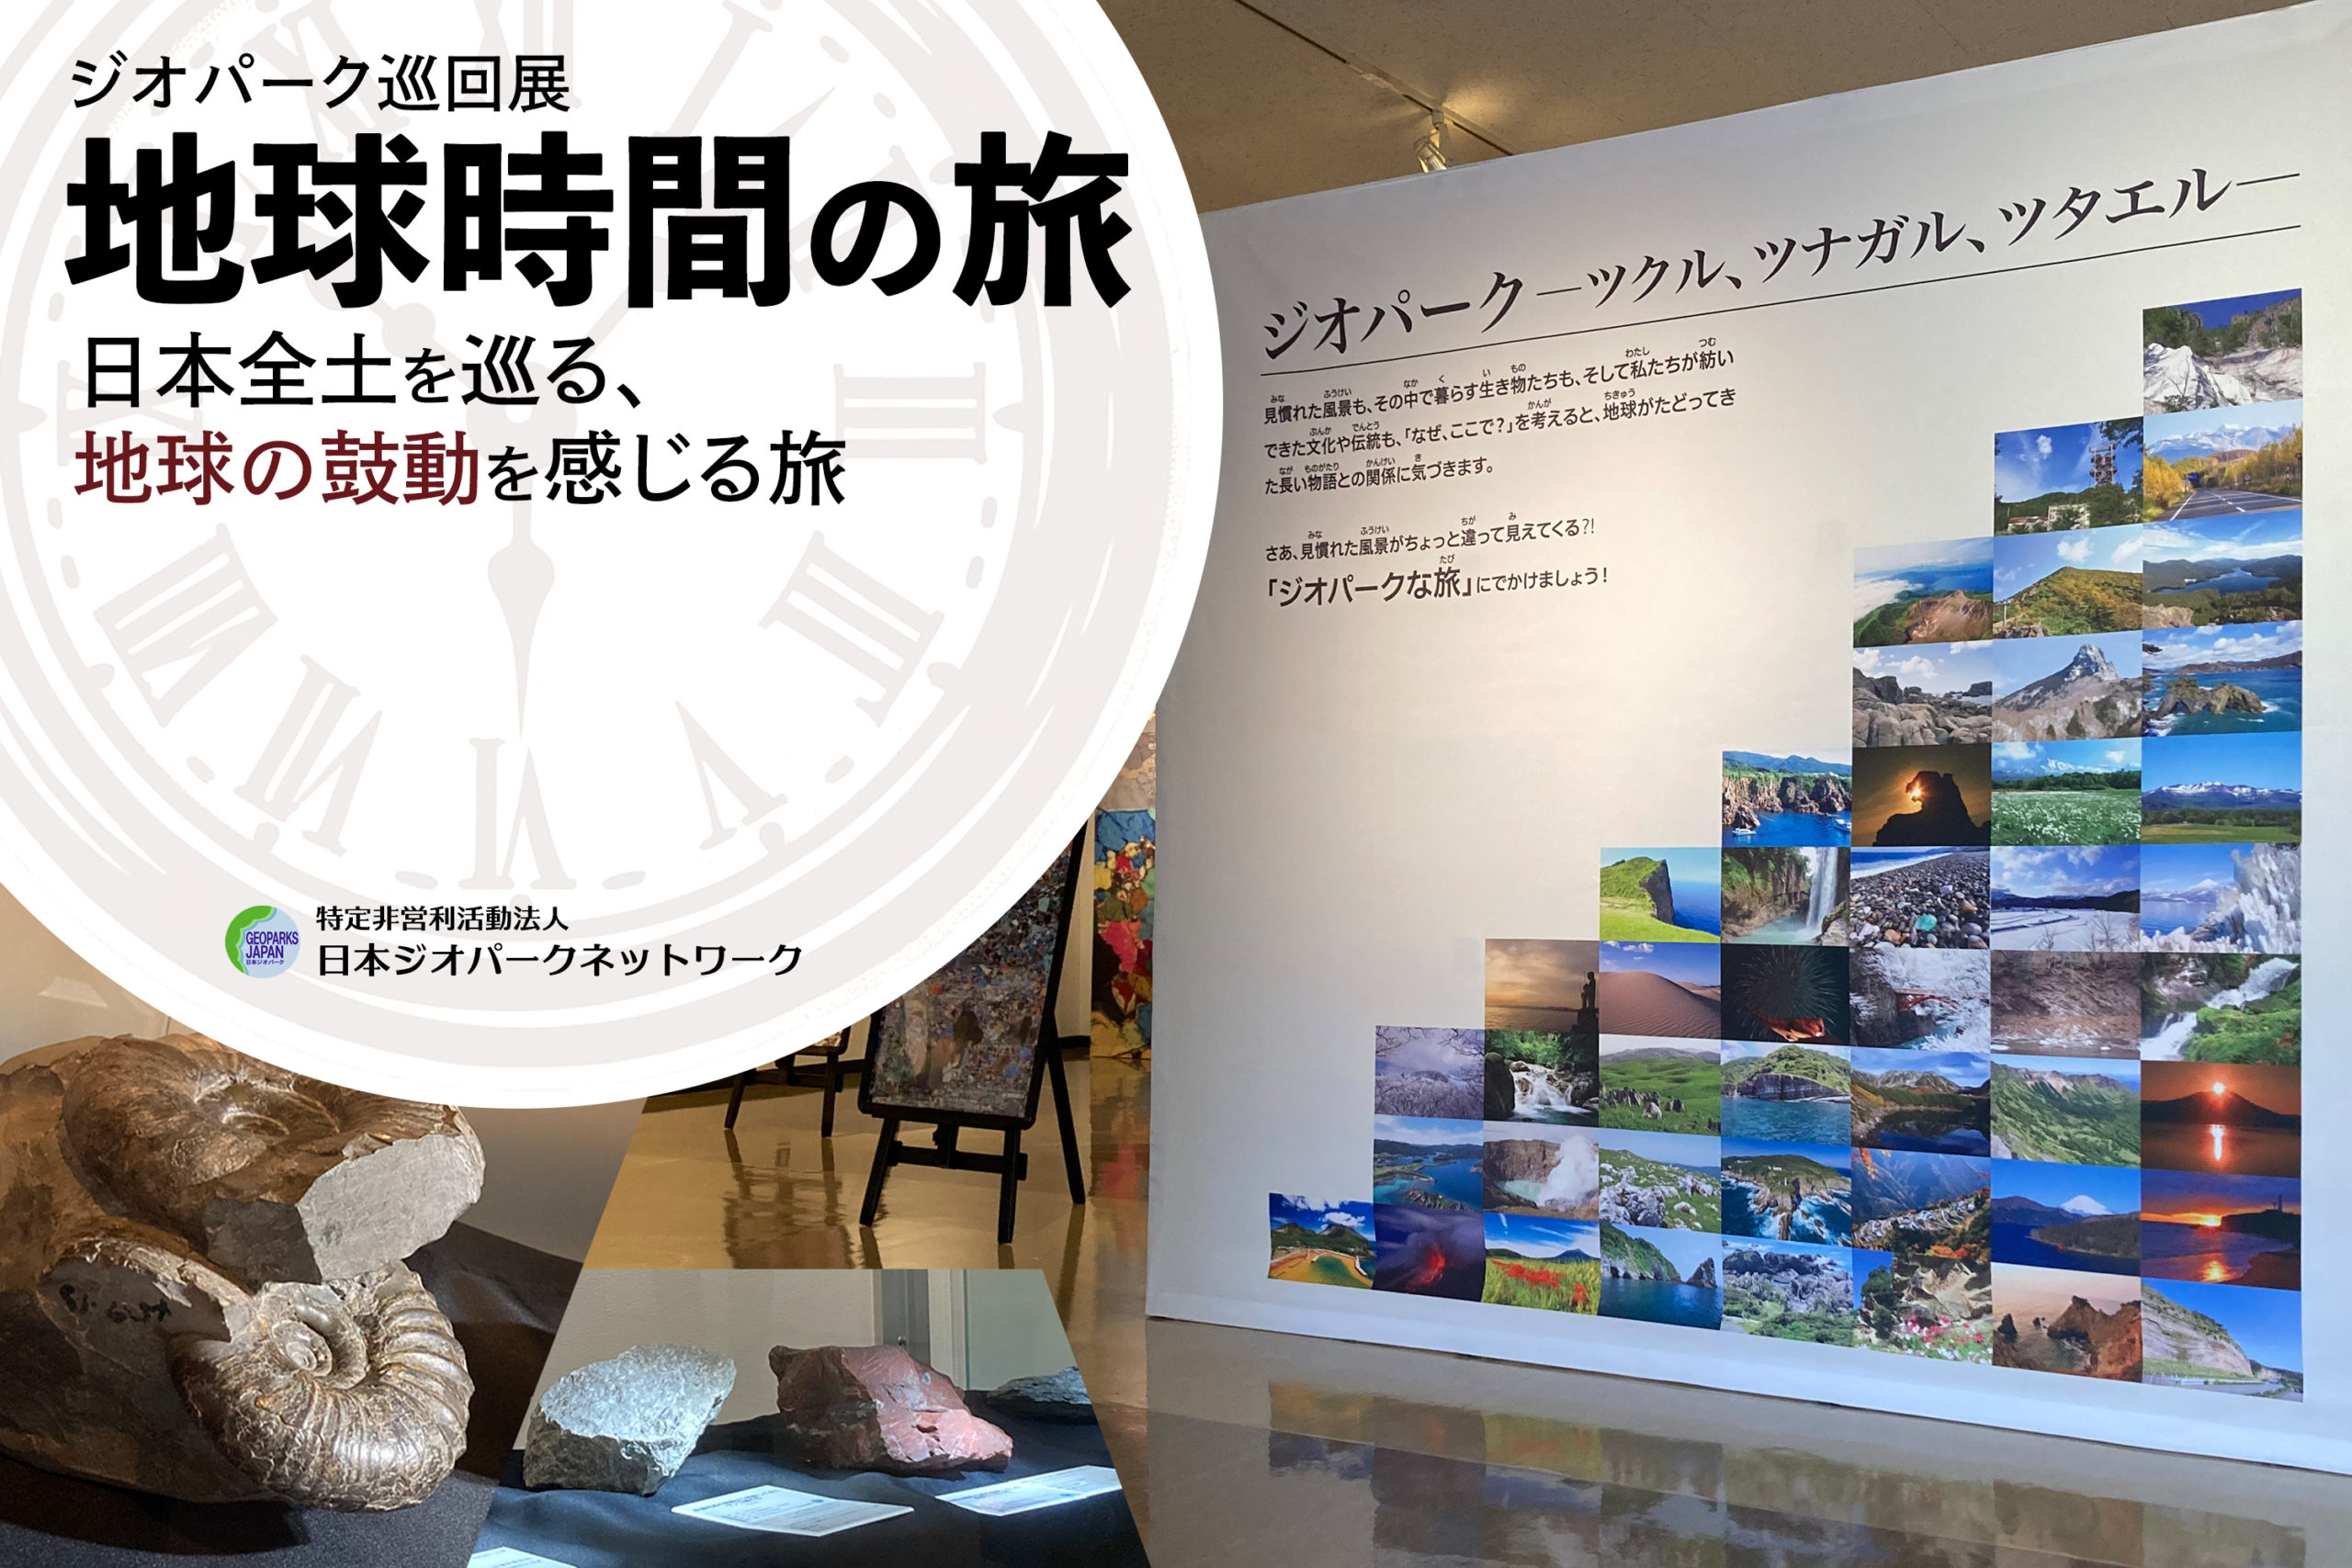 ジオパーク巡回展「地球時間の旅」日本全土を巡る、地球の鼓動を感じる旅